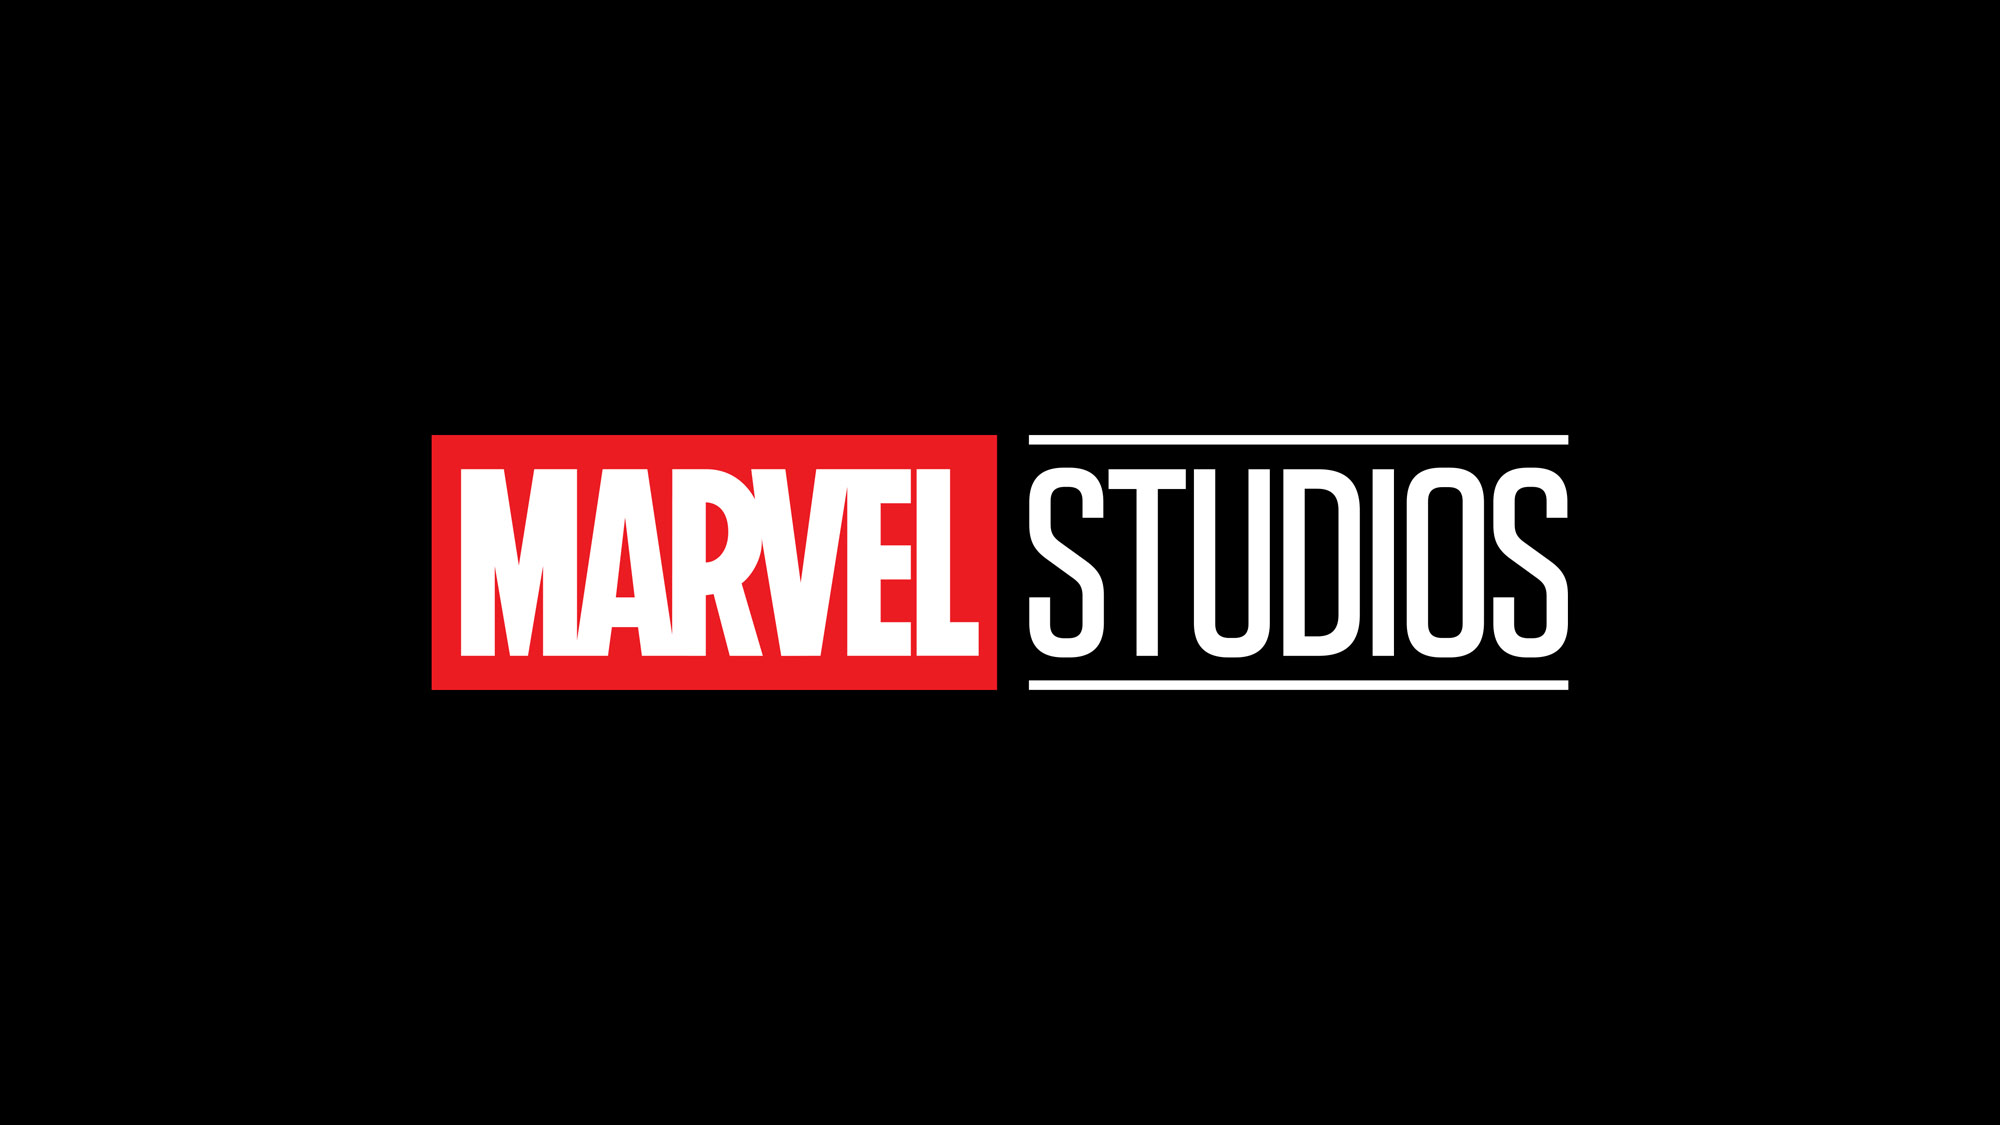 Überarbeiteter Veröffentlichungszeitplan: der aktuelle Veröffentlichungszeitplan für alle kommenden Filme des Marvel-Universums